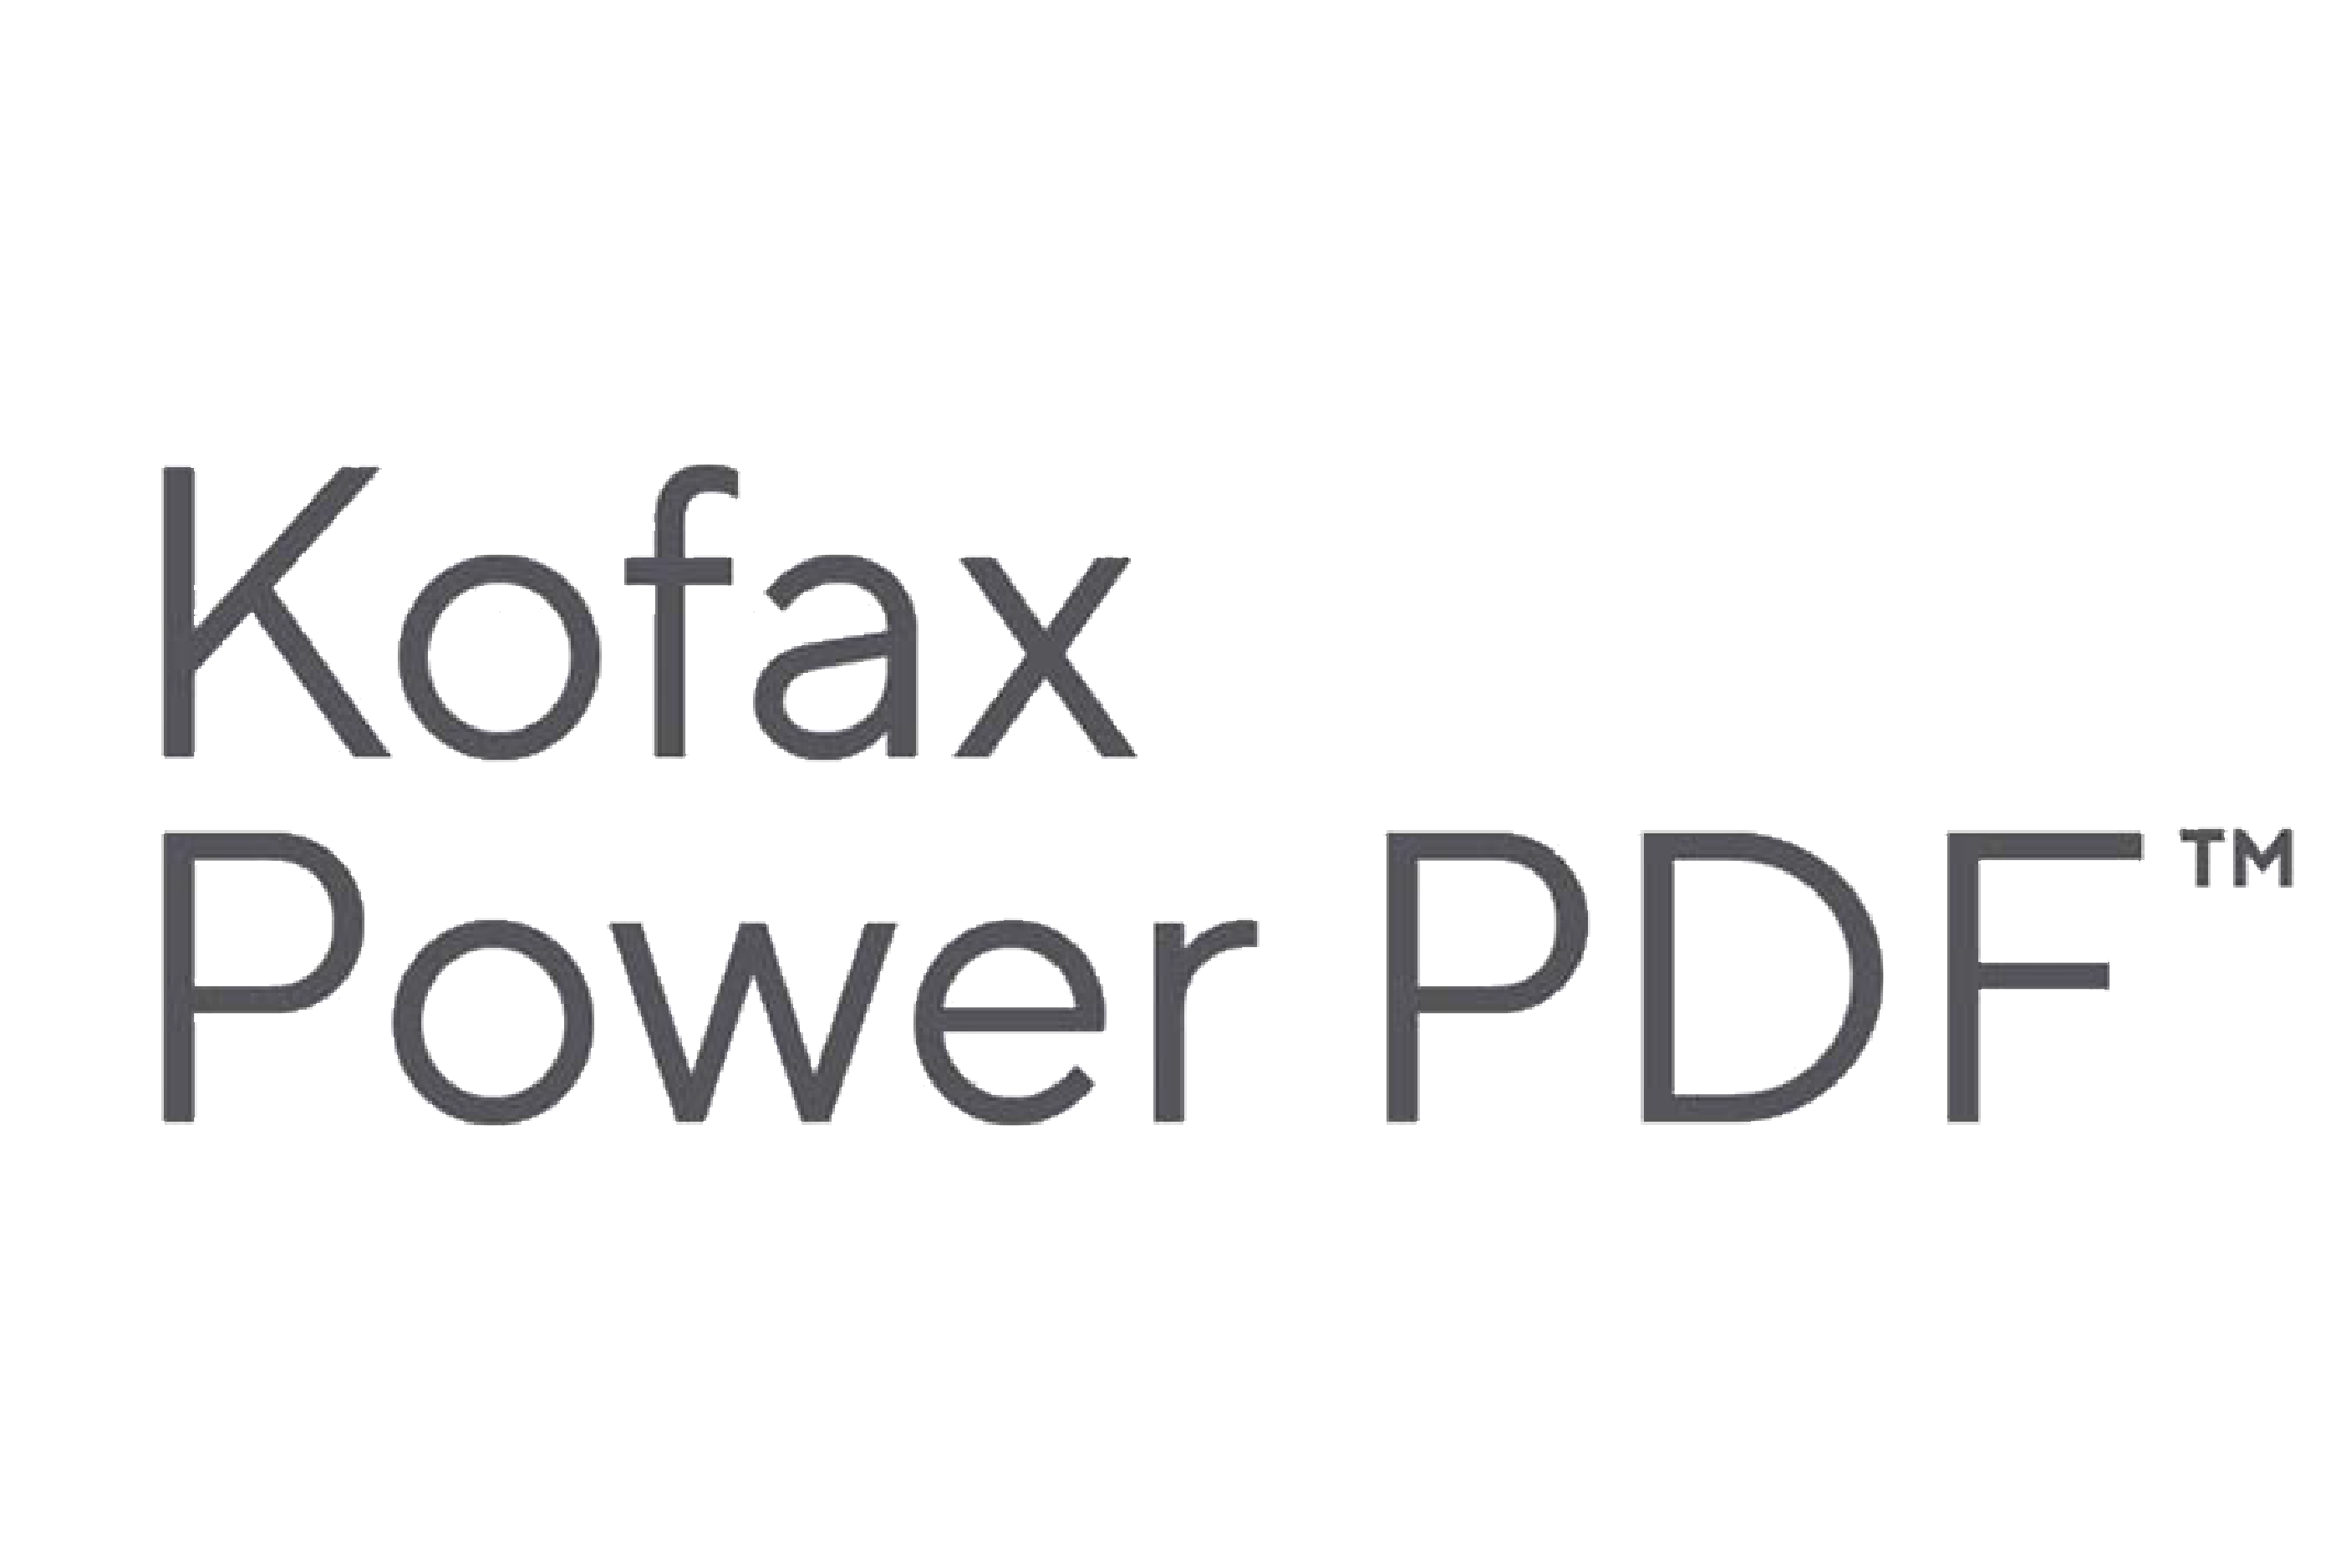 download power pdf advanced 2.0